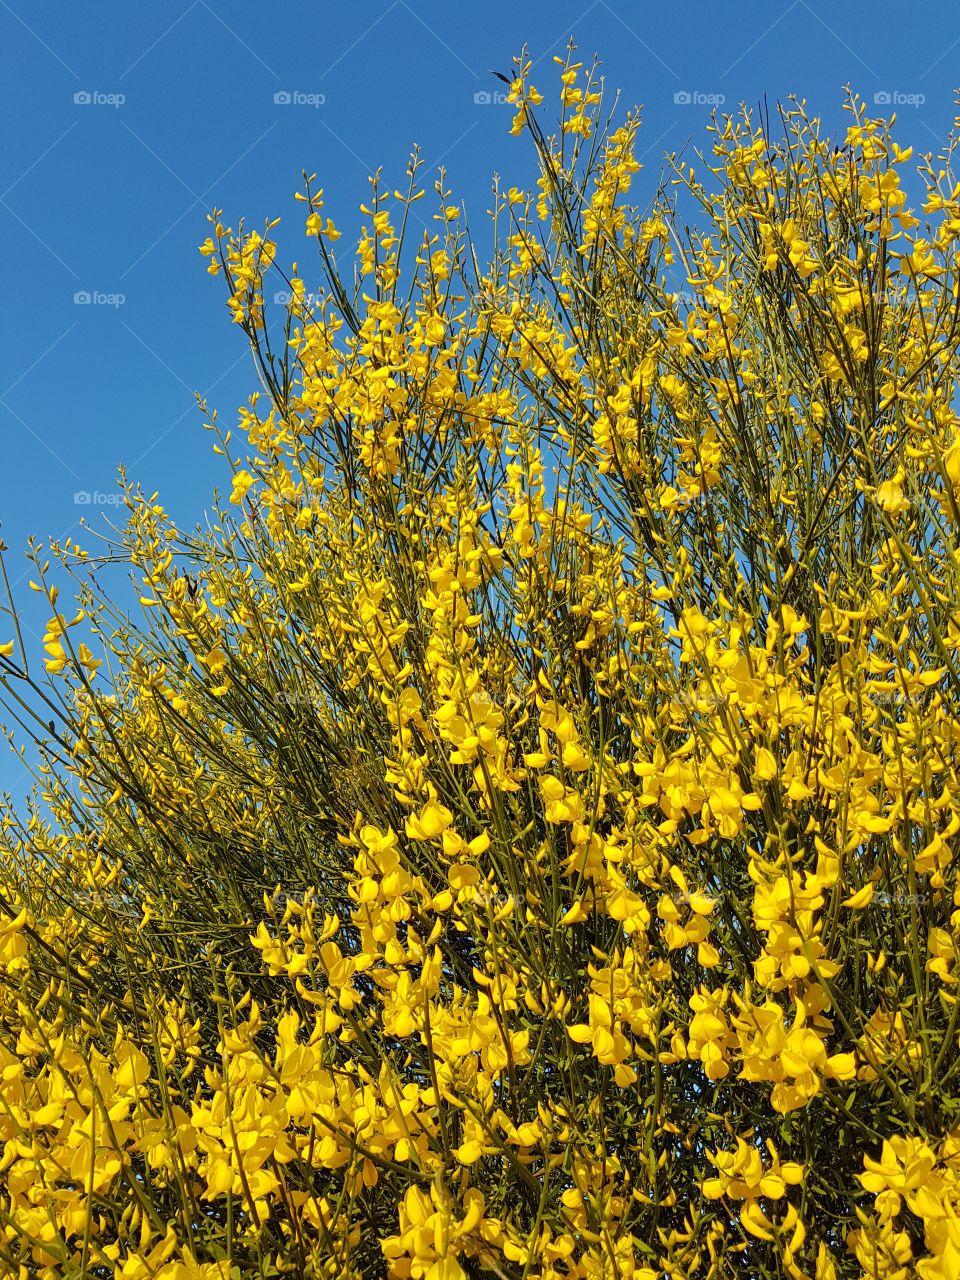 Blooming broom plant against blue sky in spring